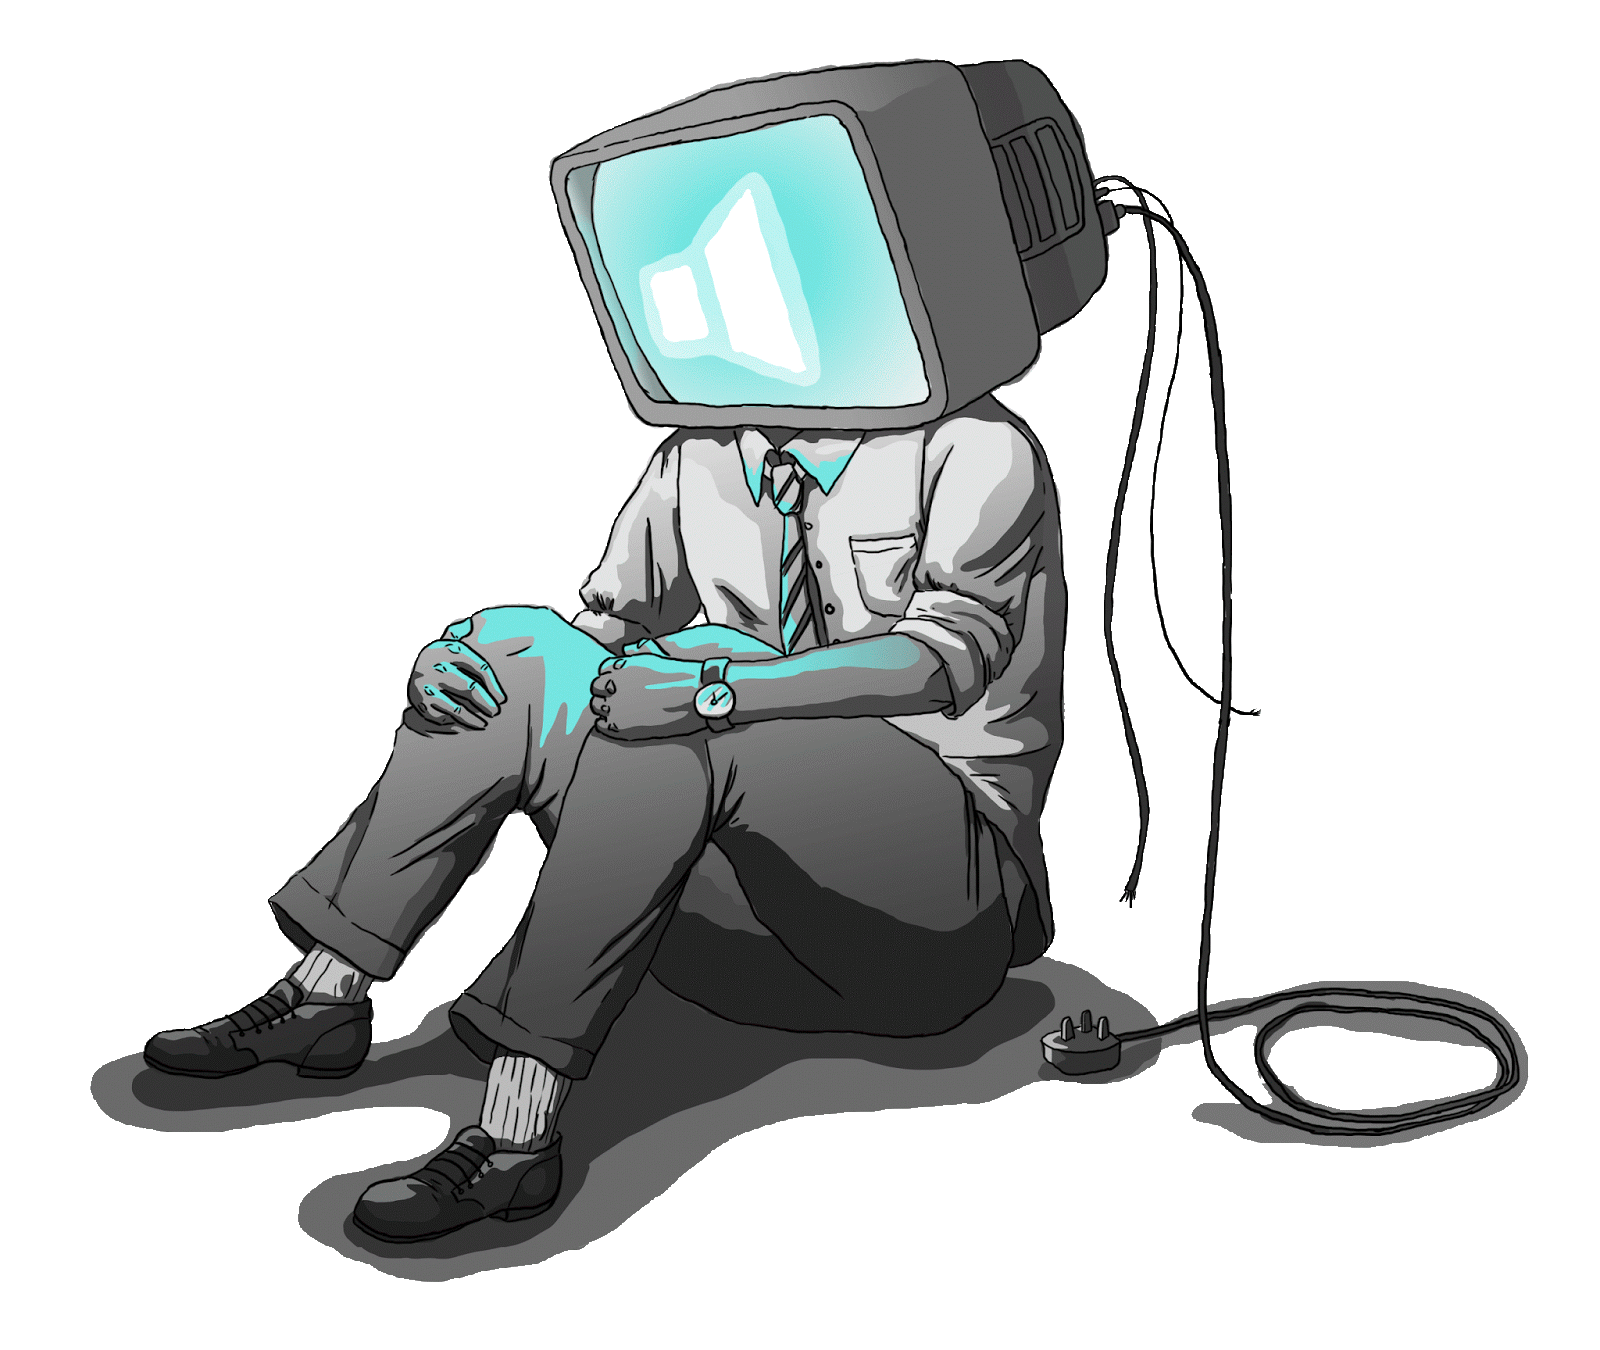 Телевизор вместо головы. Человек с головой телевизора. Чел с телевизором на голове. Парень с головой телевизора.